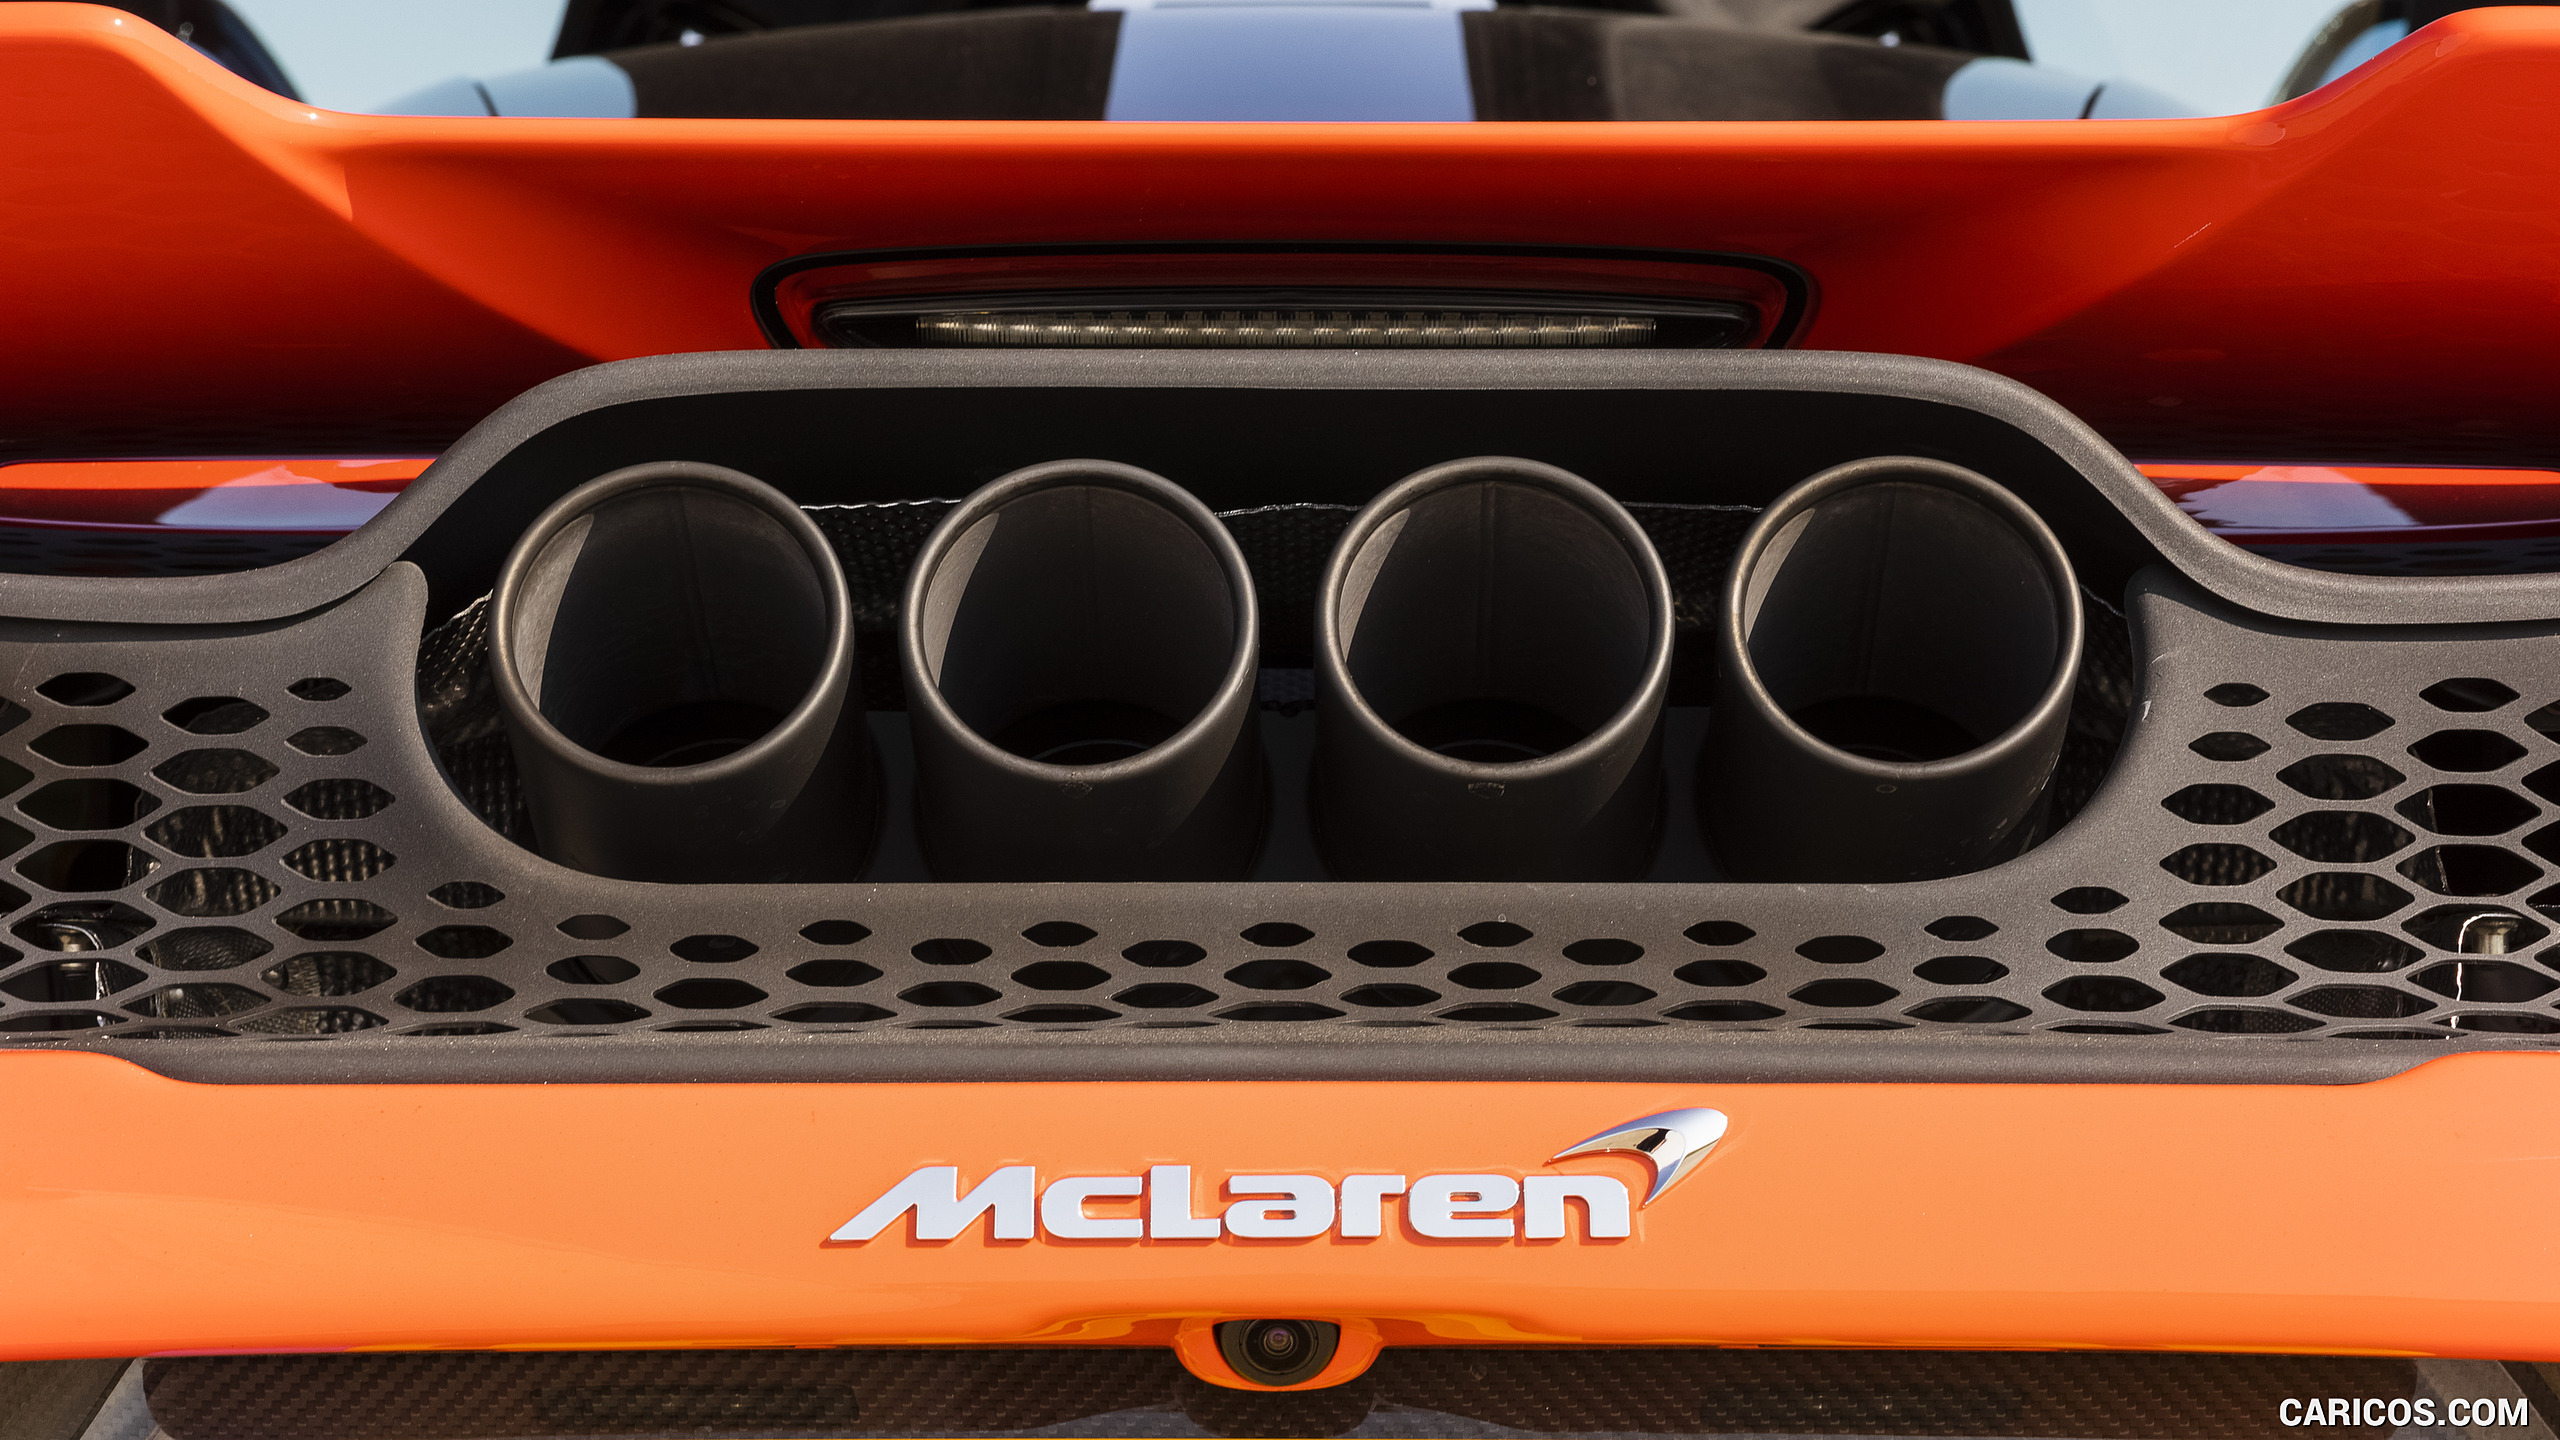 2021 McLaren 765LT - Exhaust, #101 of 159